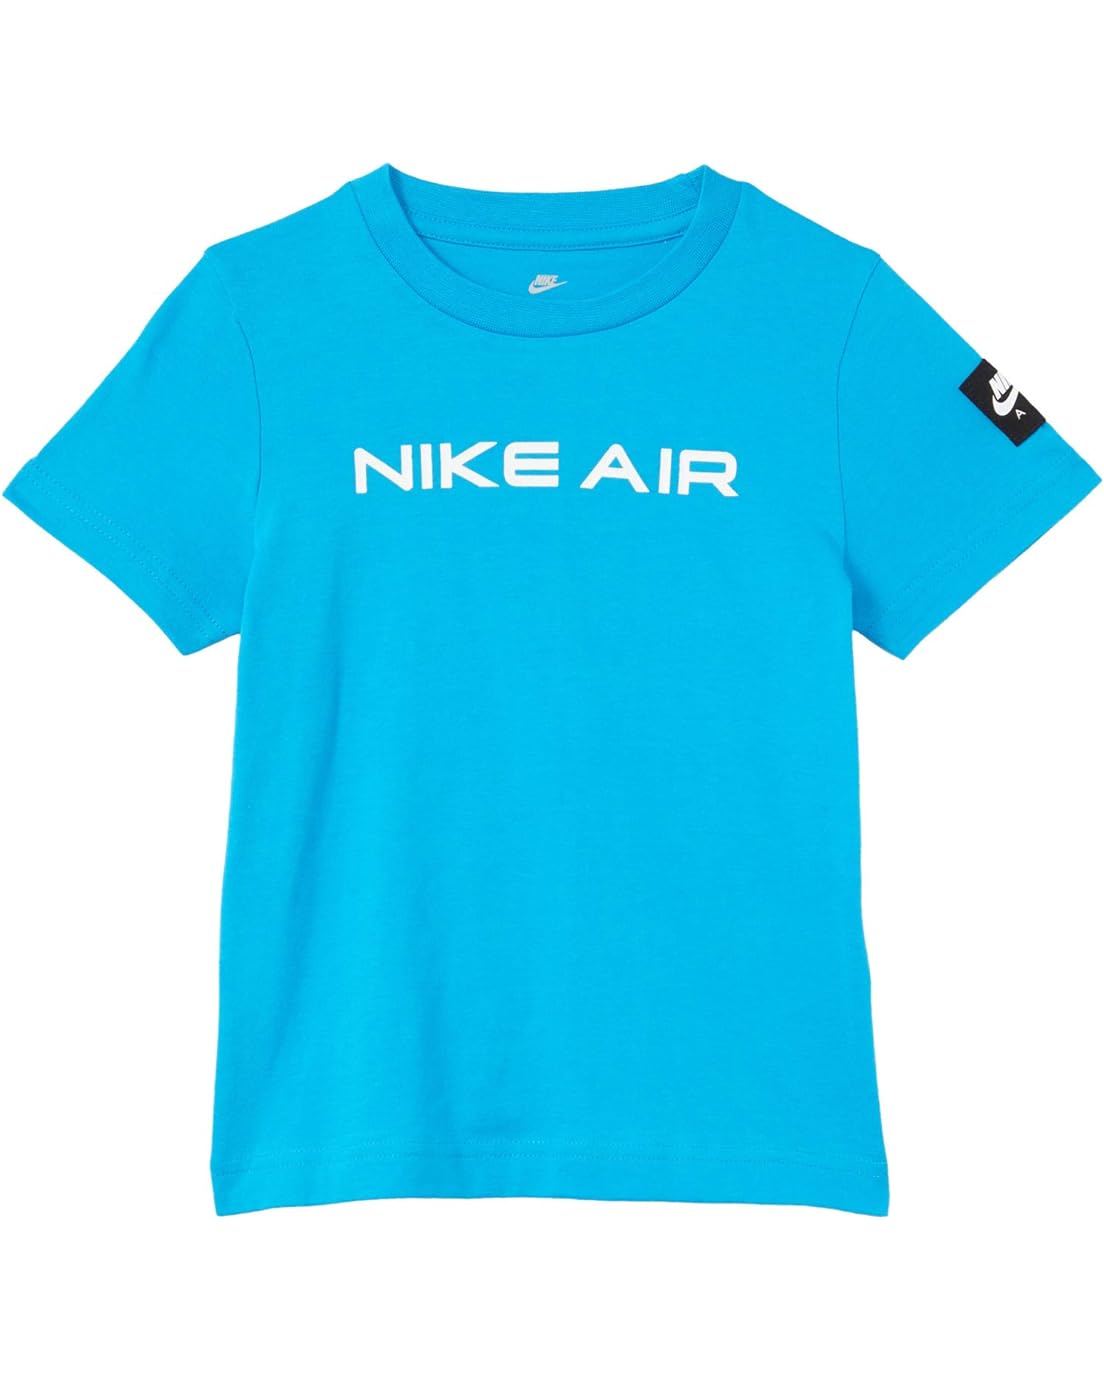 Nike Kids Air Graphic T-Shirt (Toddler)